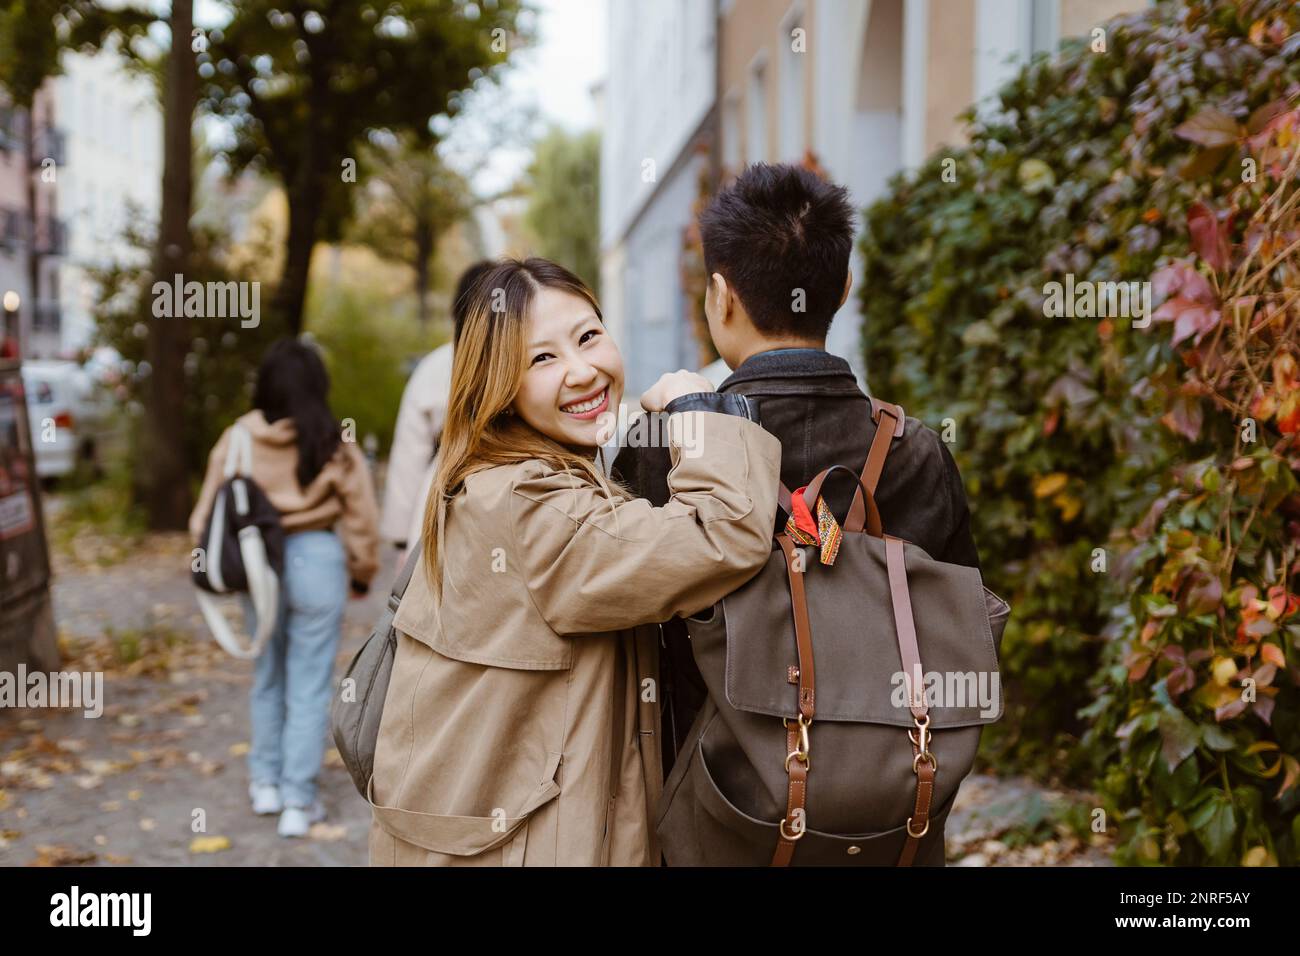 Porträt einer glücklichen Frau, die über die Schulter blickt, während sie mit einem männlichen Freund auf dem Bürgersteig läuft Stockfoto